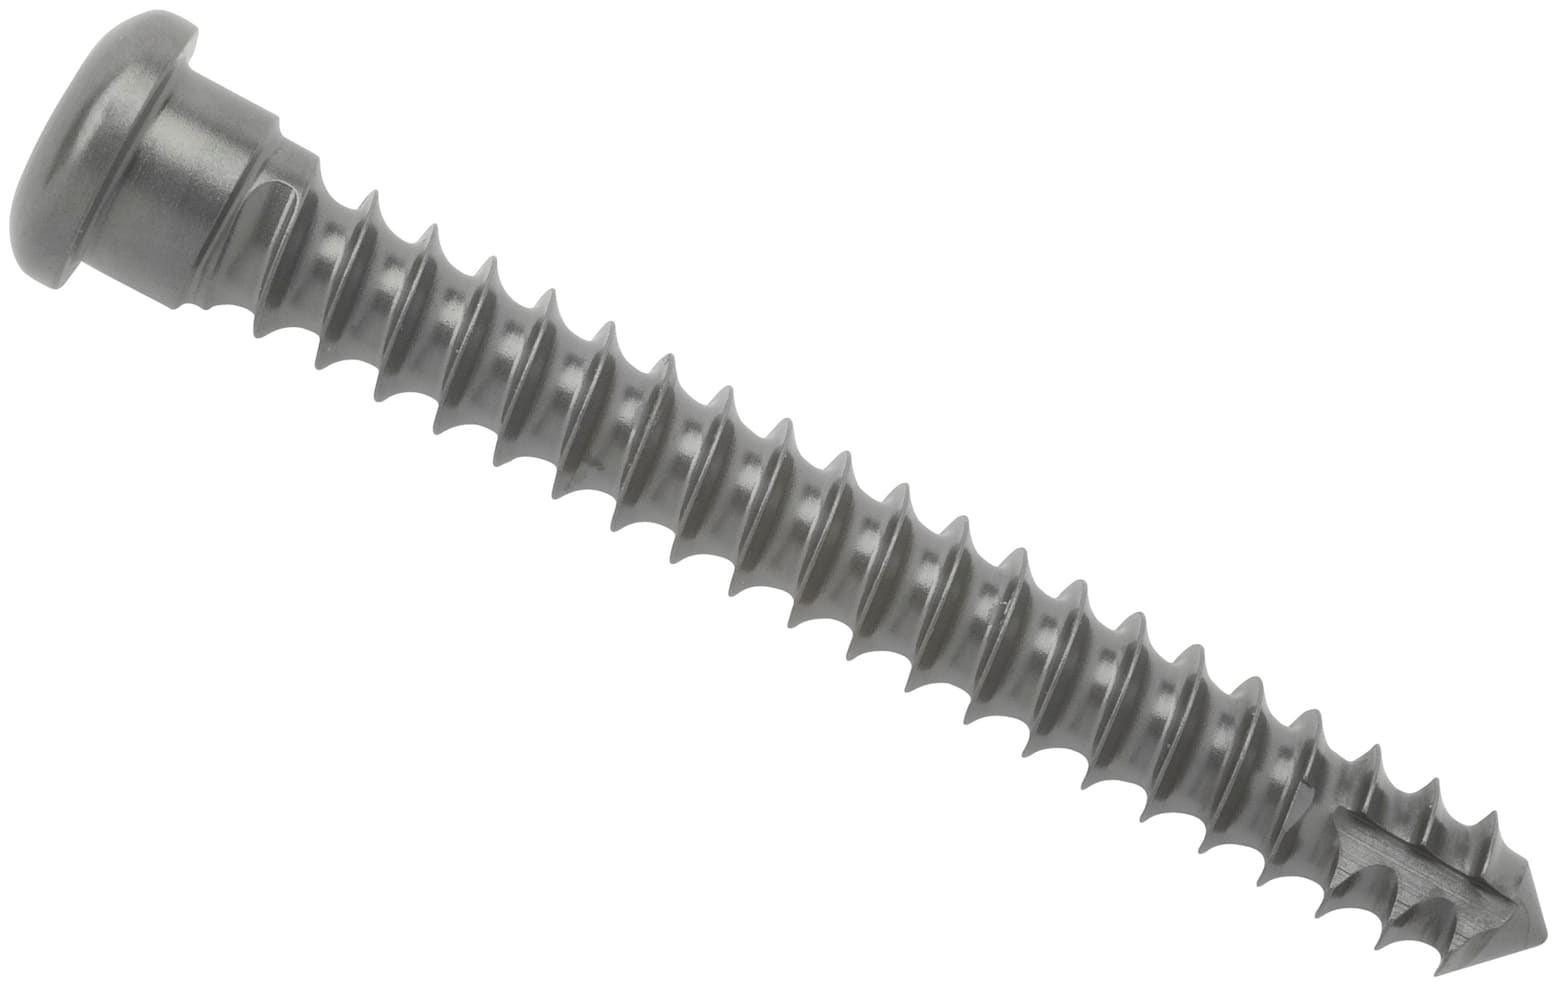 Cortical Screw, 3.5 mm x 28 mm